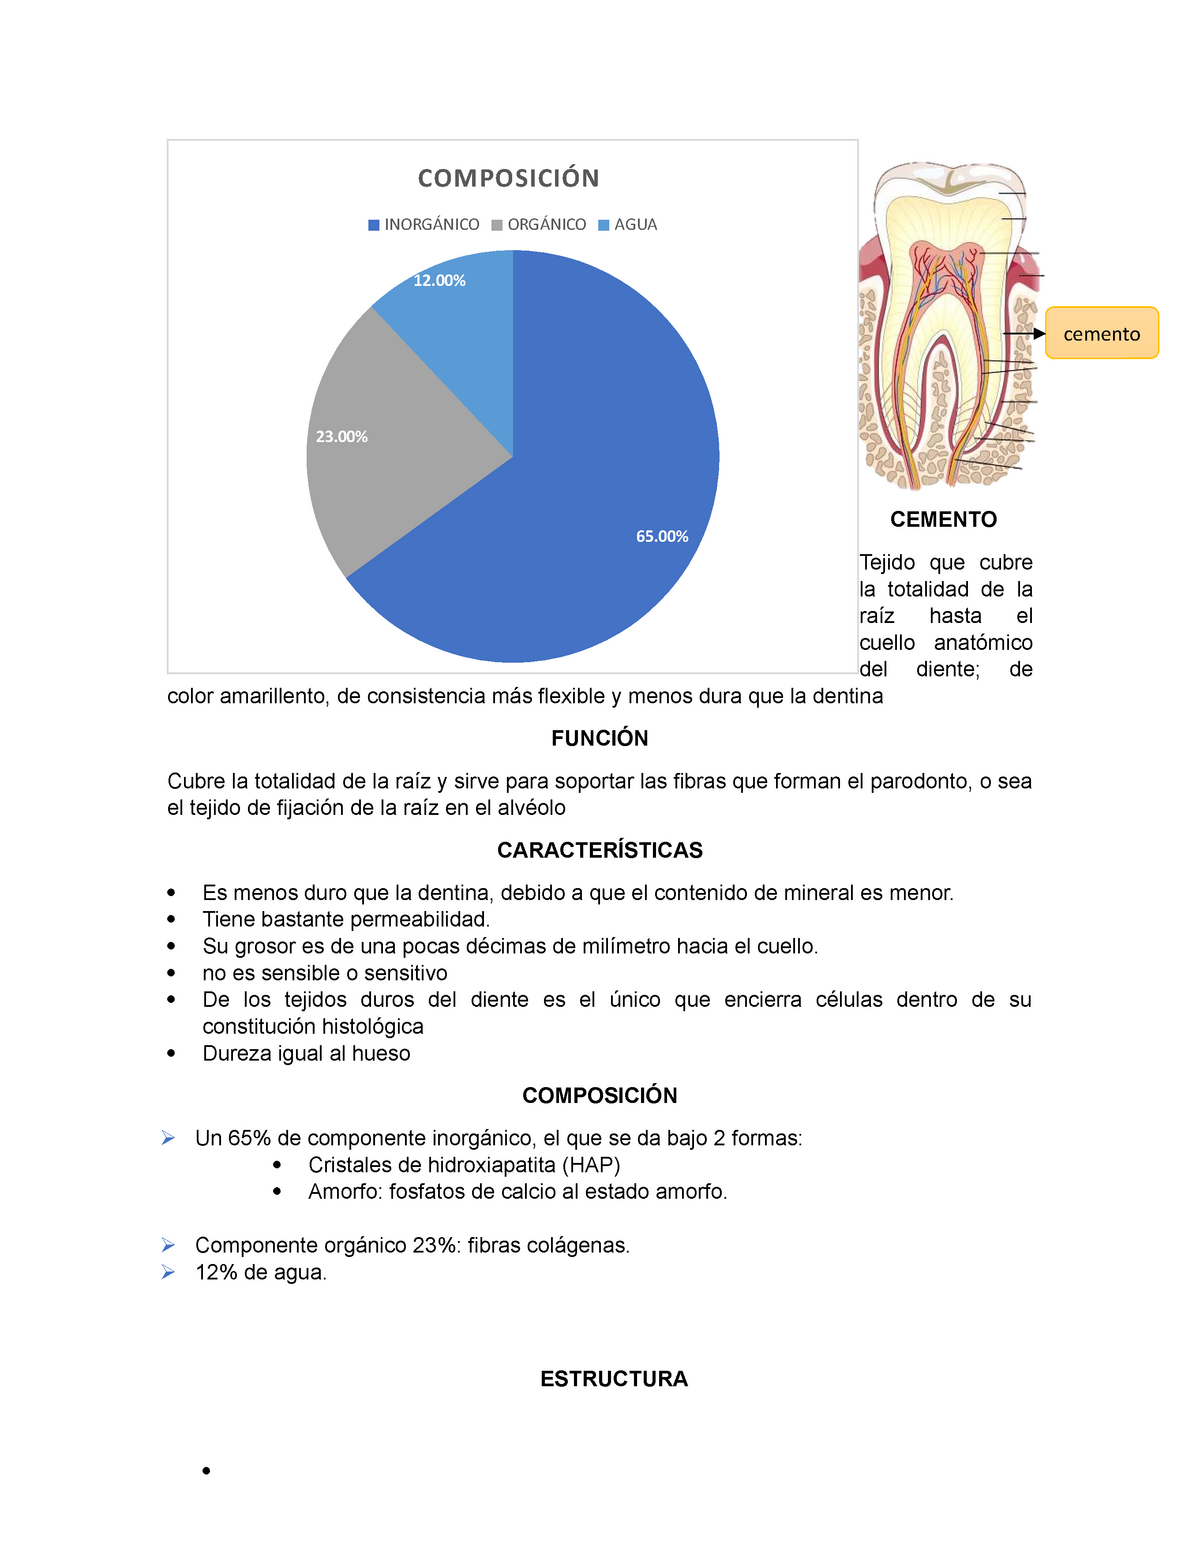 Histología del cemento dentario 